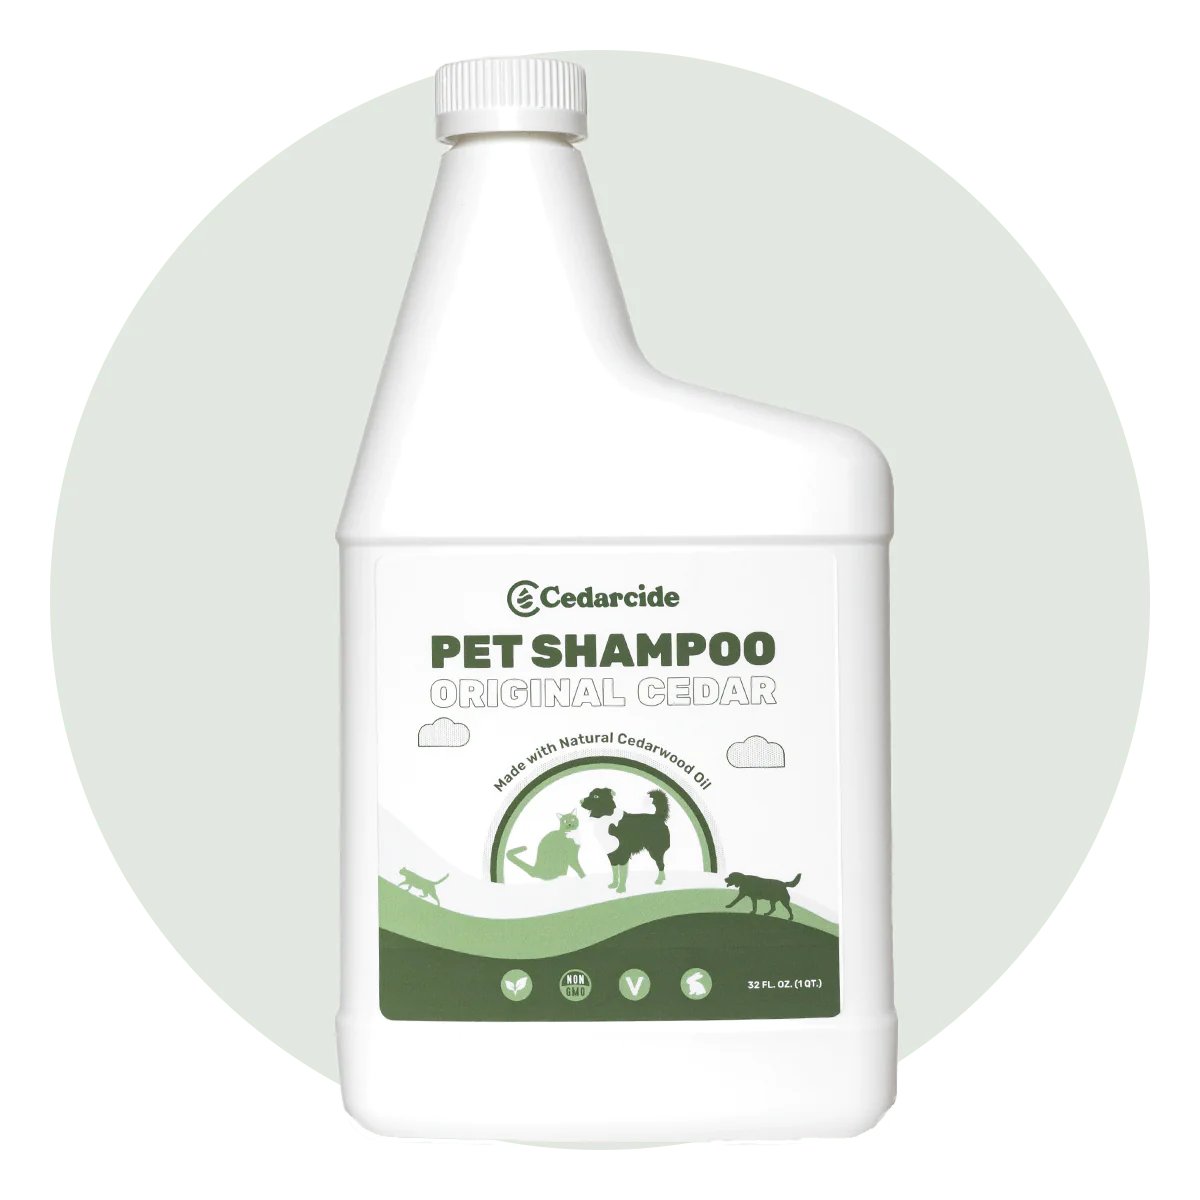 Cedarcide Pet Shampoo 32 oz.